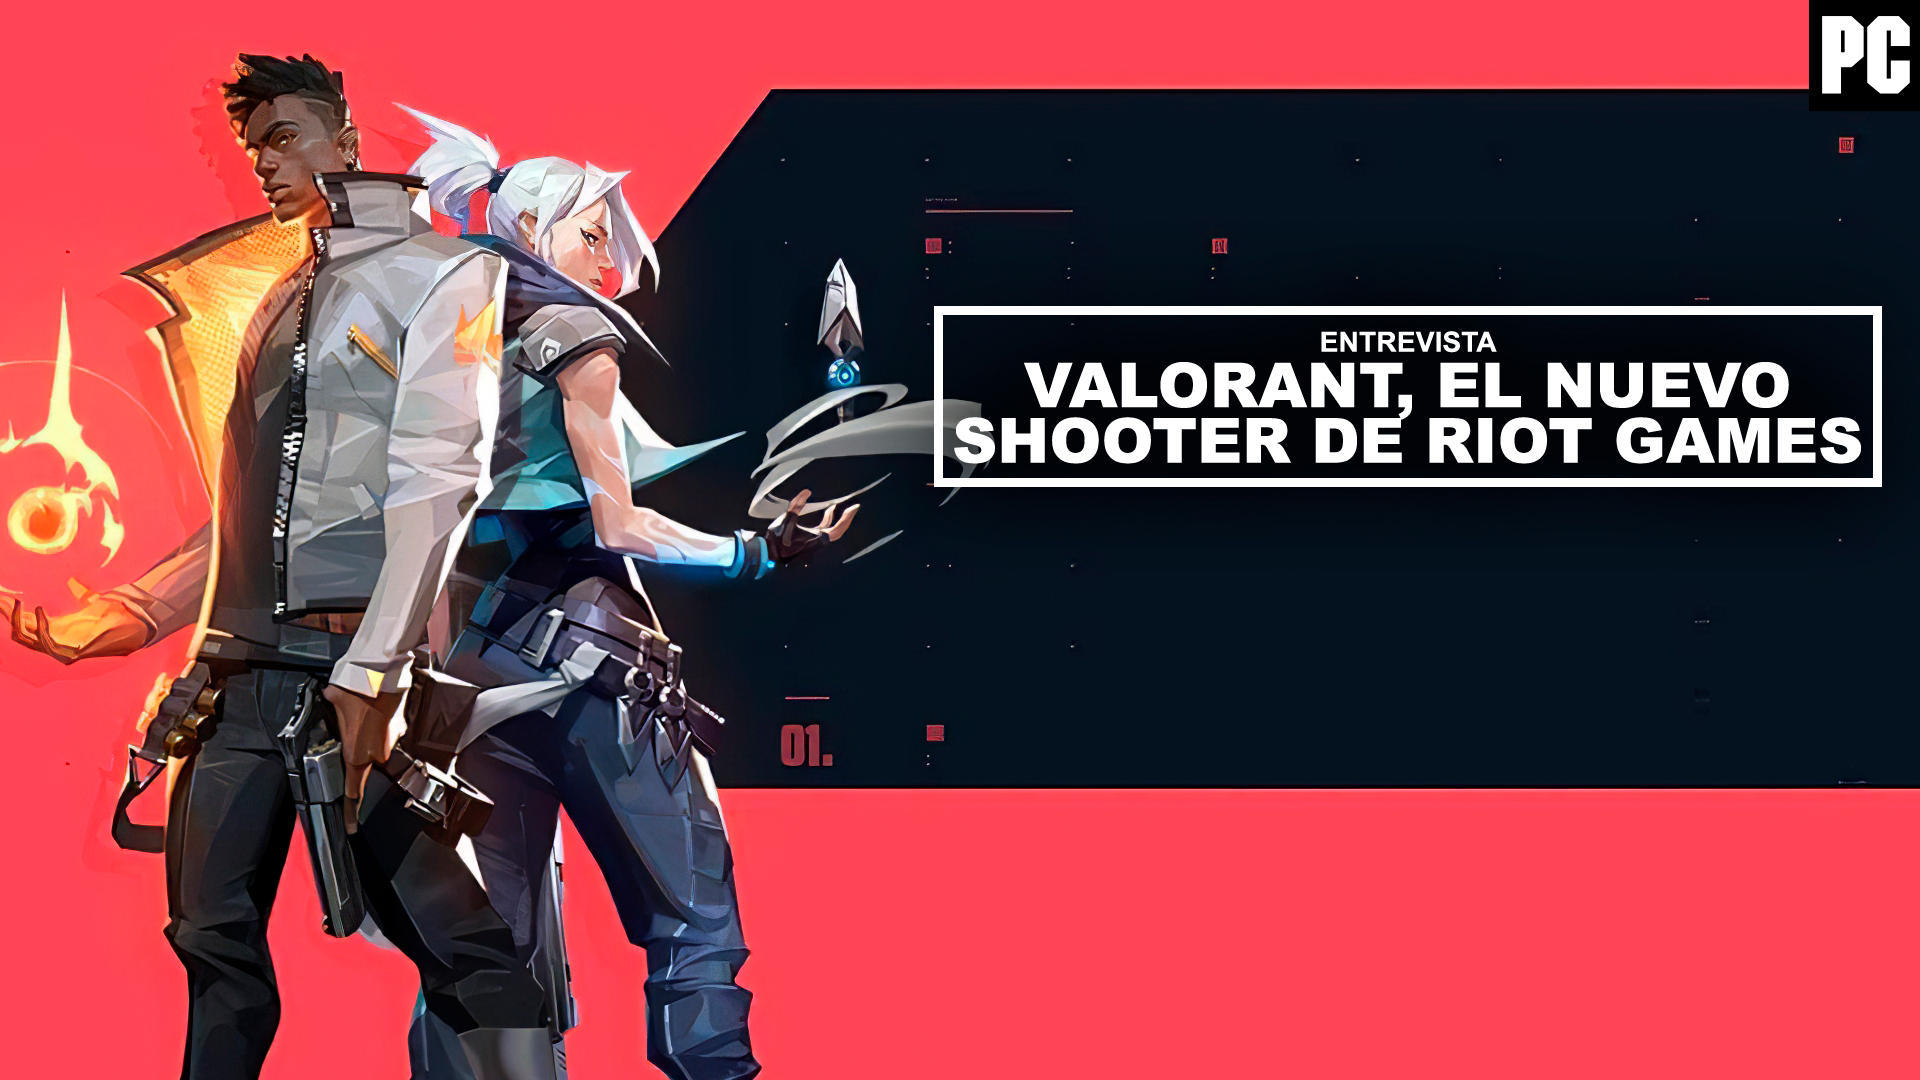 Entrevista Valorant, el nuevo shooter de Riot Games